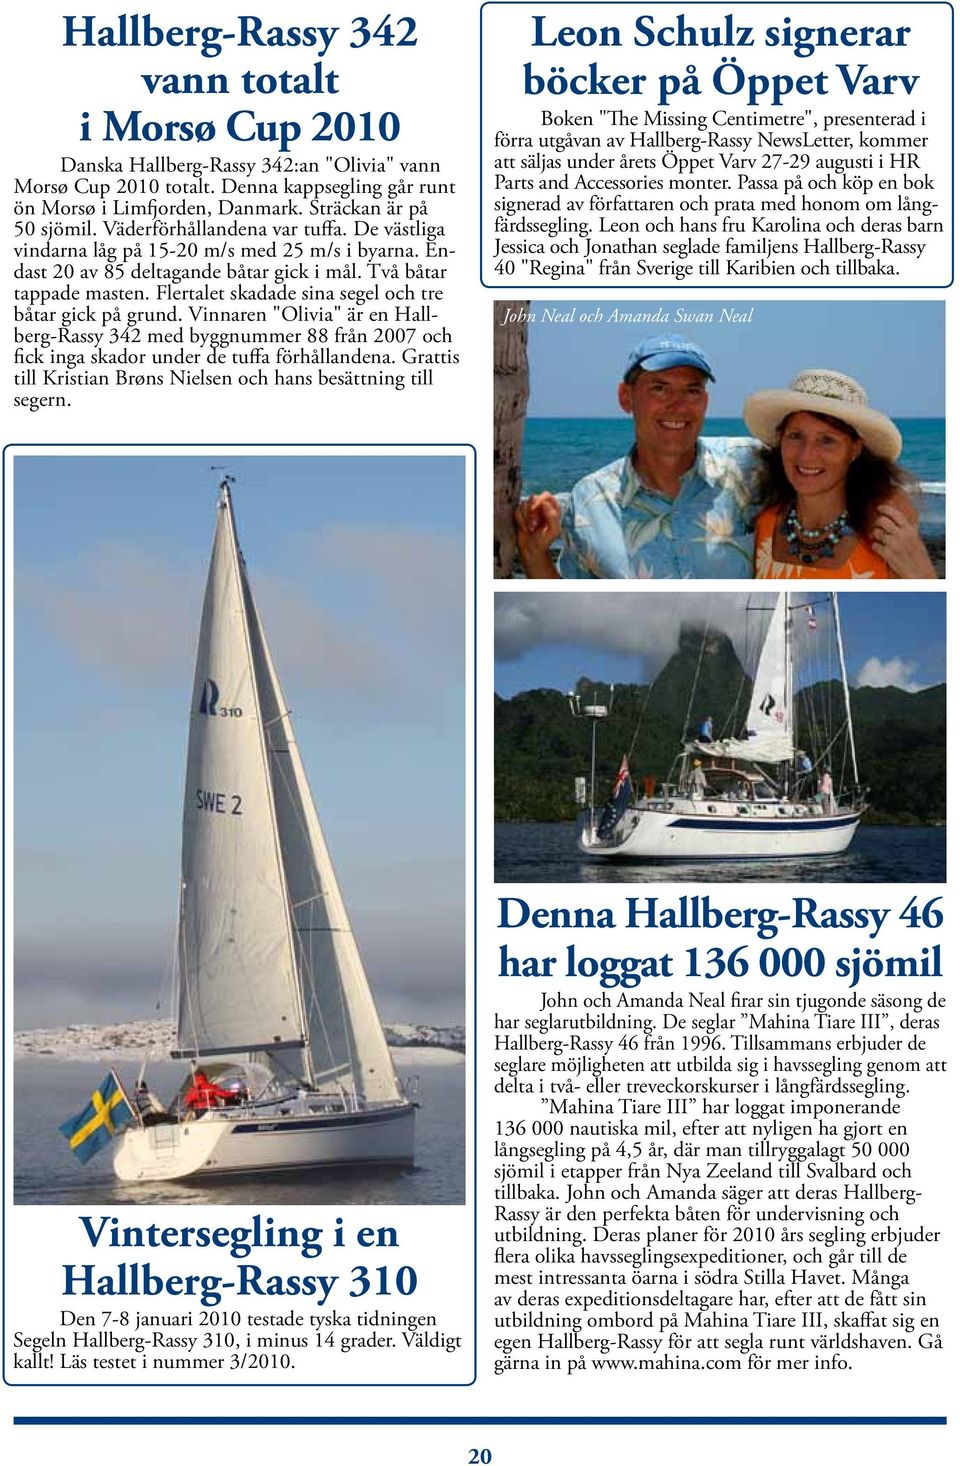 Flertalet skadade sina segel och tre båtar gick på grund. Vinnaren "Olivia" är en Hallberg-Rassy 342 med byggnummer 88 från 2007 och fick inga skador under de tuffa förhållandena.